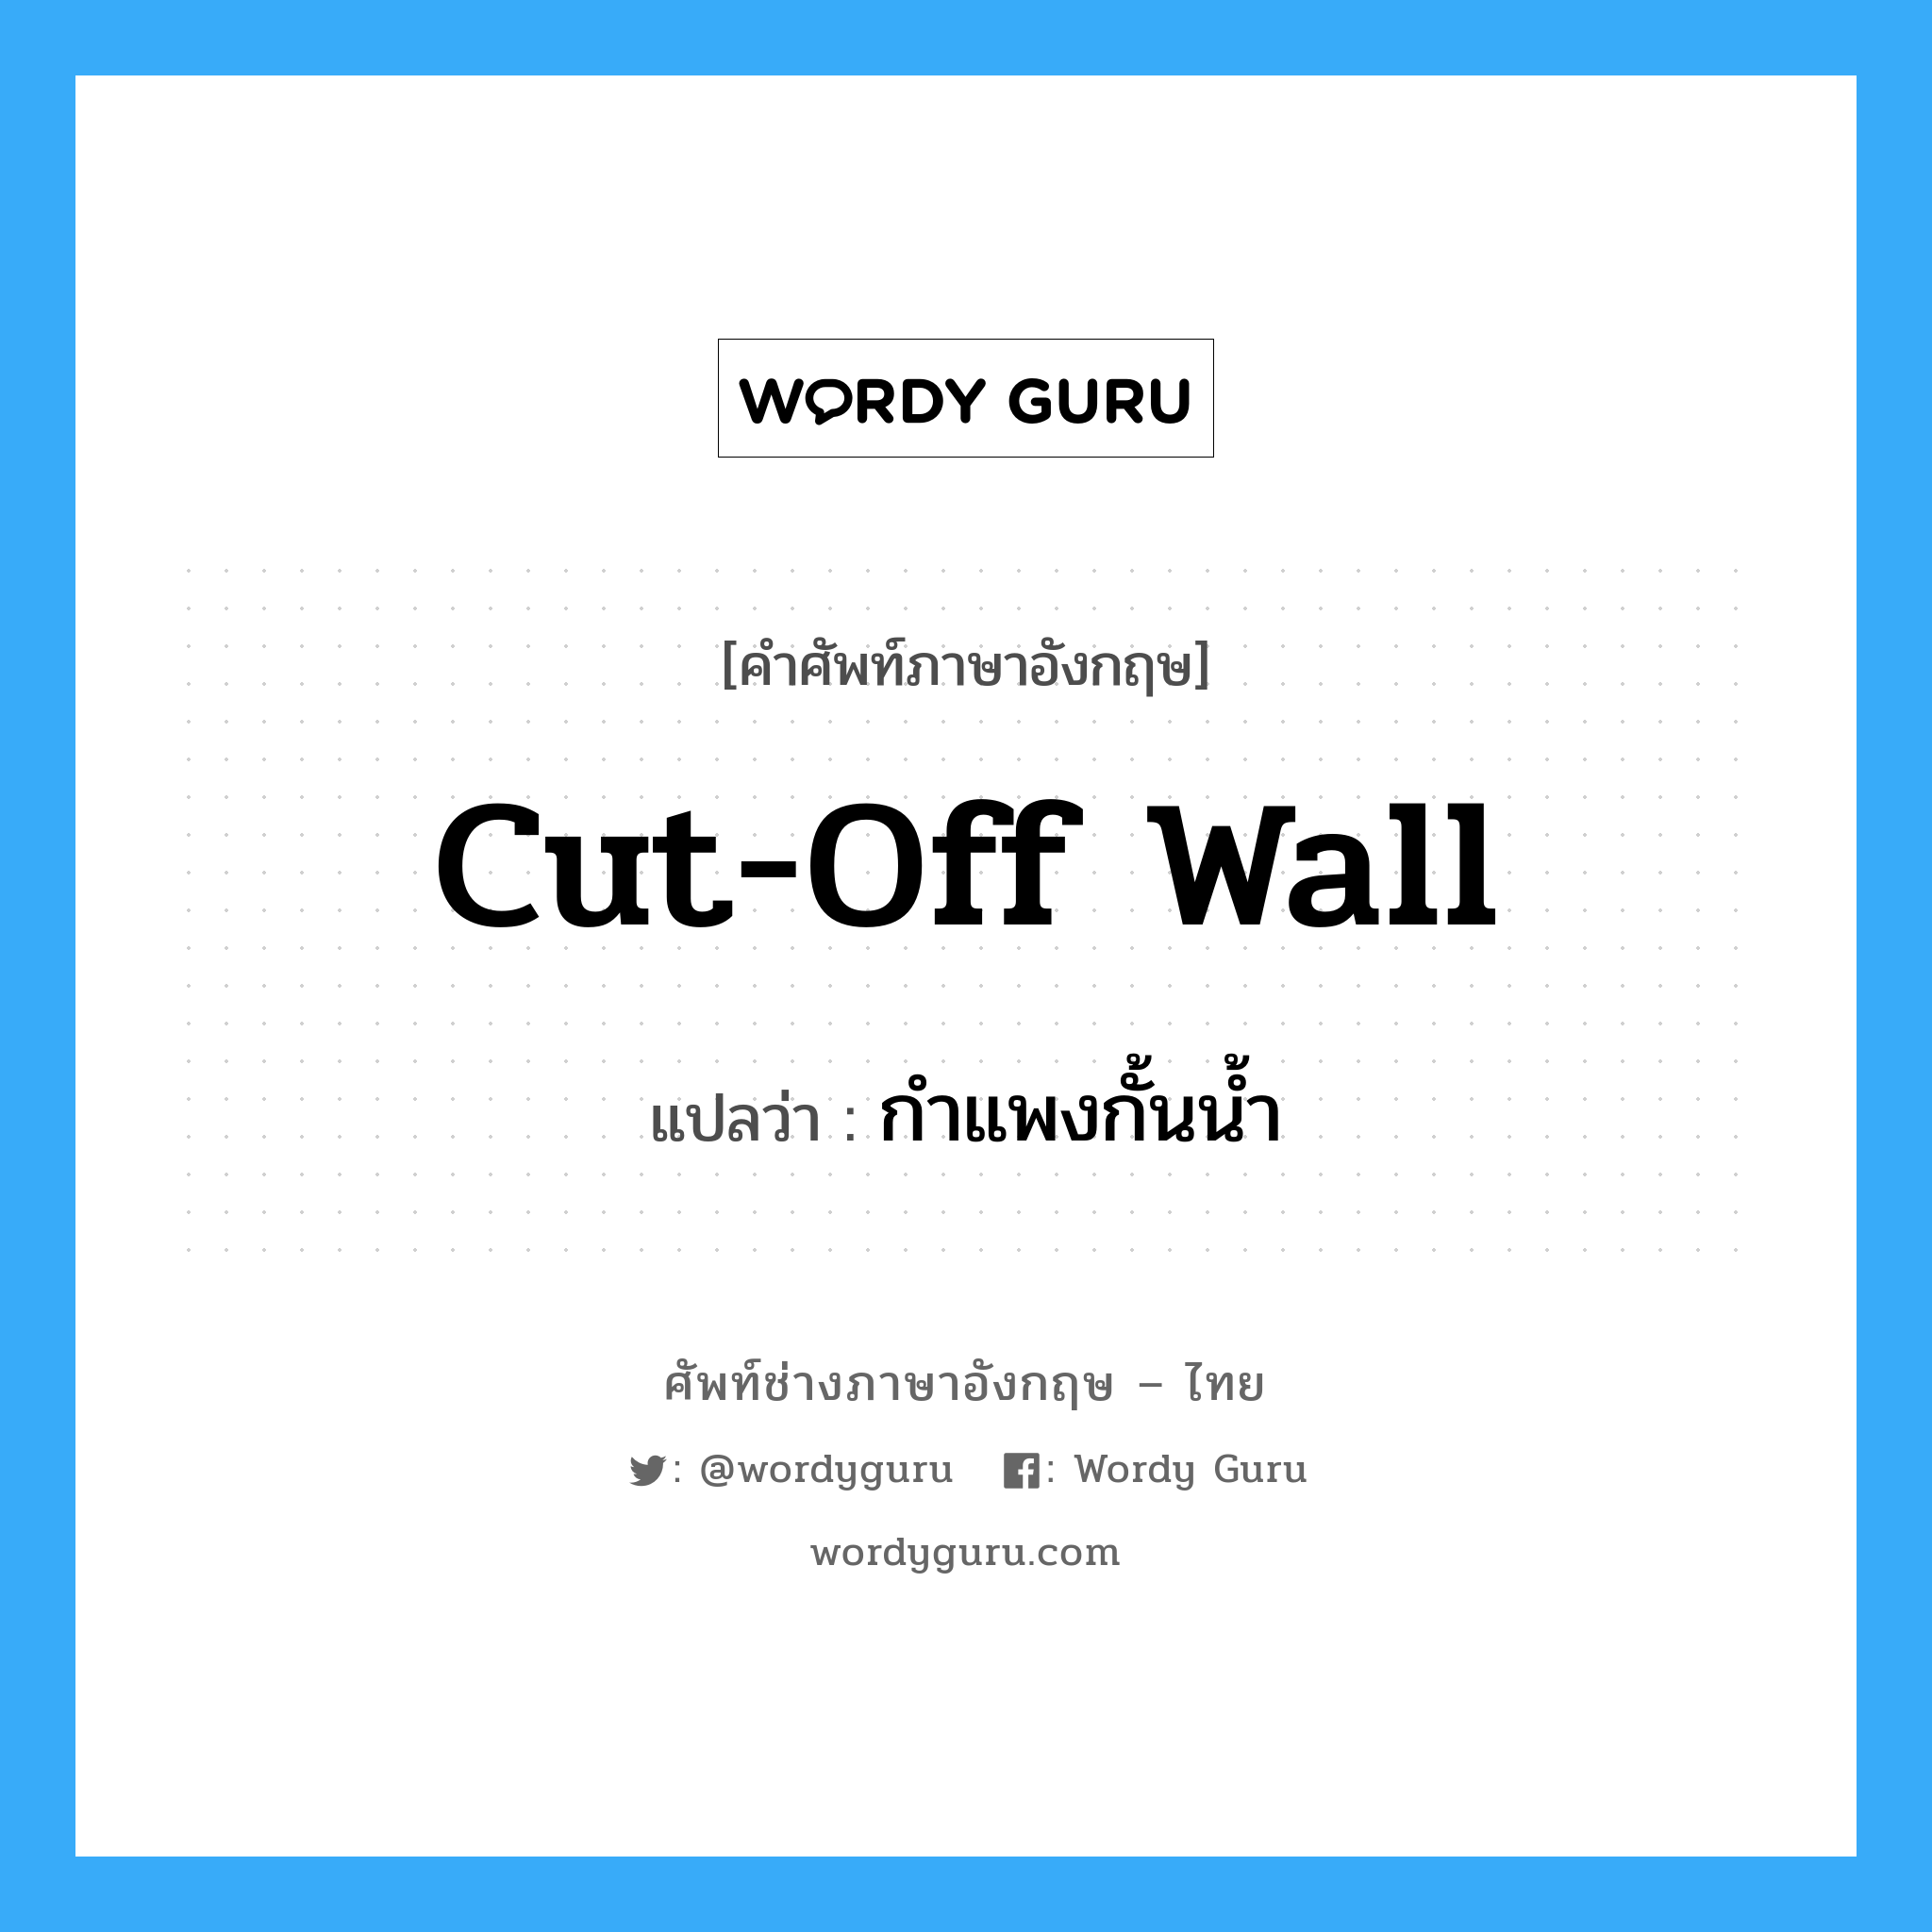 กำแพงกั้นน้ำ ภาษาอังกฤษ?, คำศัพท์ช่างภาษาอังกฤษ - ไทย กำแพงกั้นน้ำ คำศัพท์ภาษาอังกฤษ กำแพงกั้นน้ำ แปลว่า cut-off wall